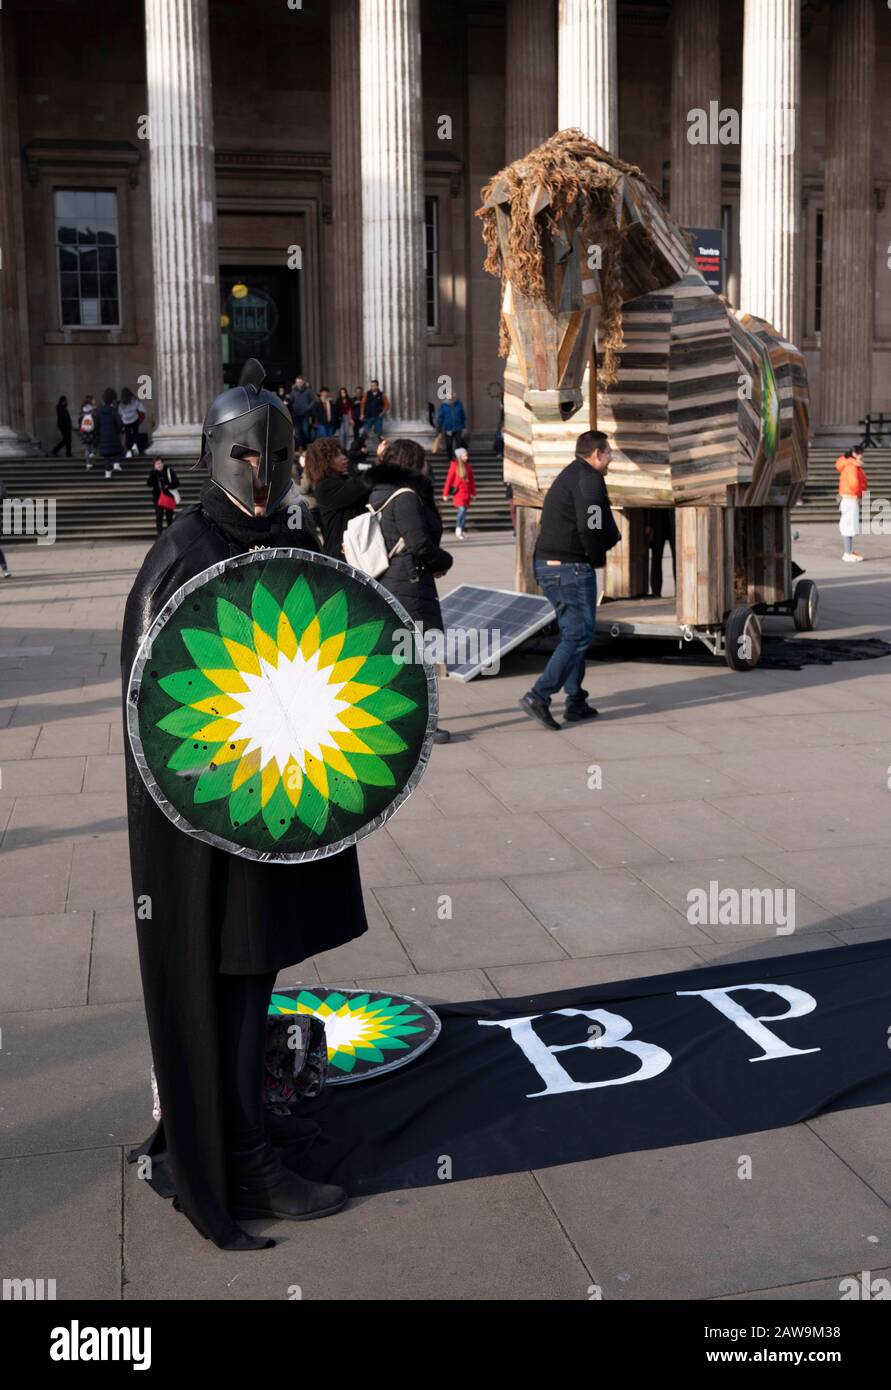 Un cavallo di Troia, messo da attivisti, vestito da soldati greci, di fronte al British Museum, Londra in protesta contro BP, che sponsorizzano la mostra Troia al museo. Foto Stock